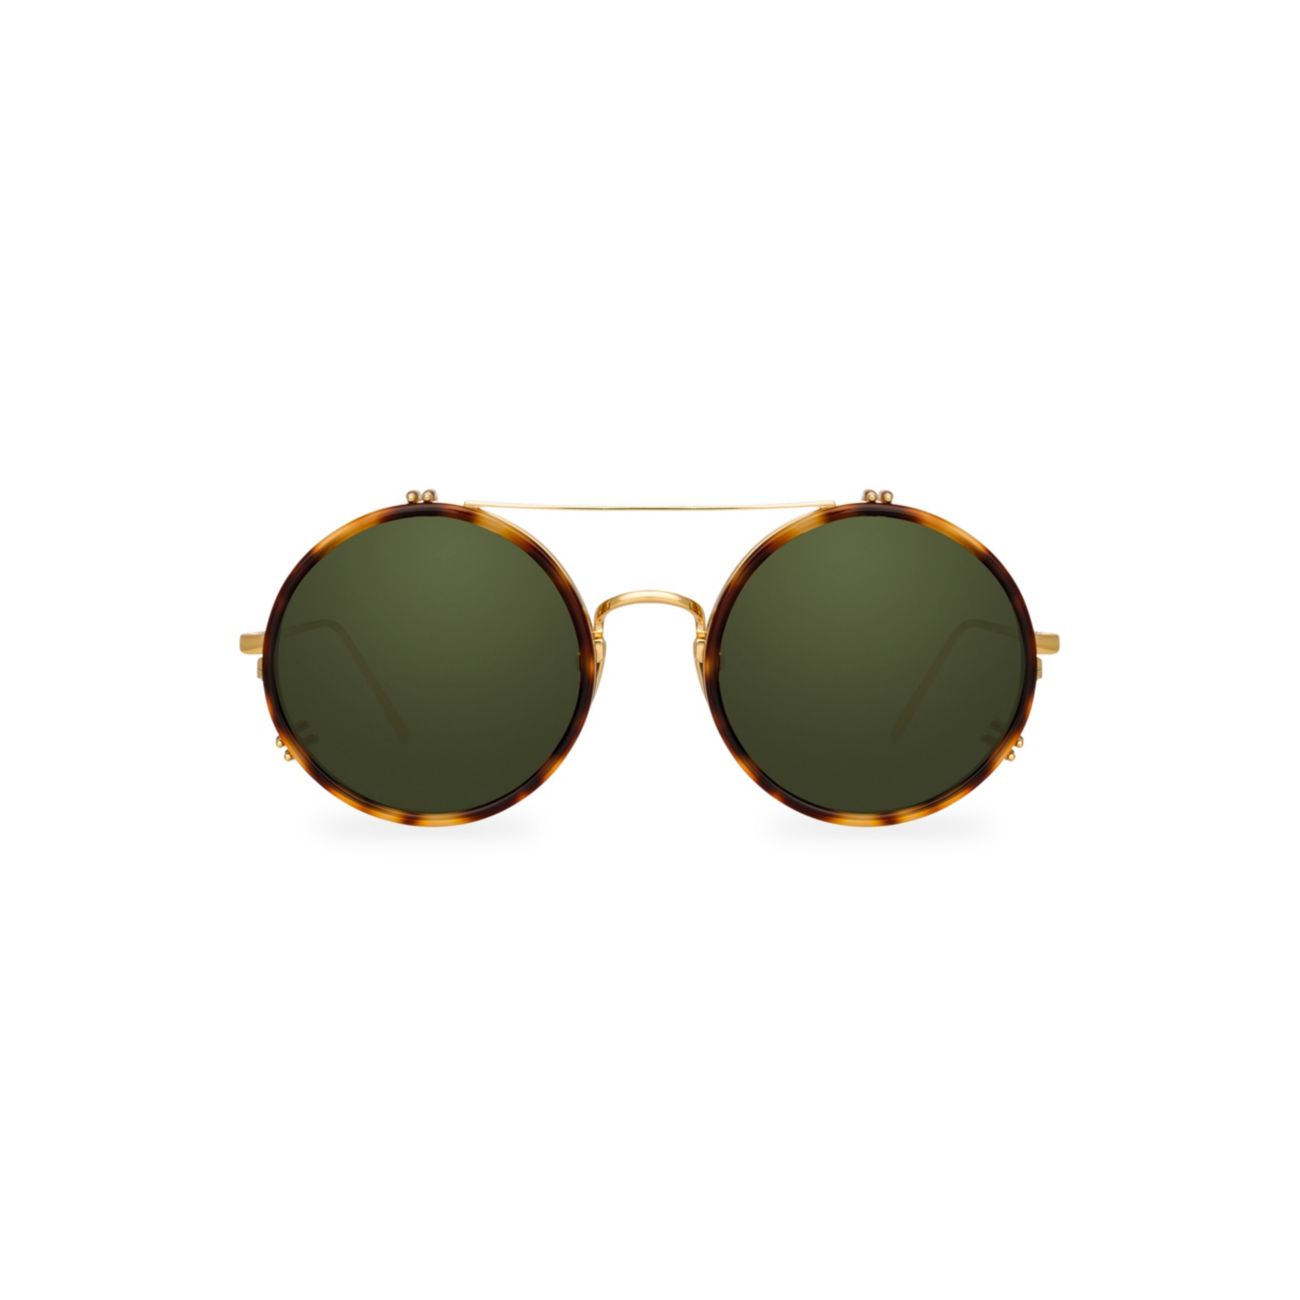 Круглые солнцезащитные очки-авиаторы 741 C5 Linda Farrow